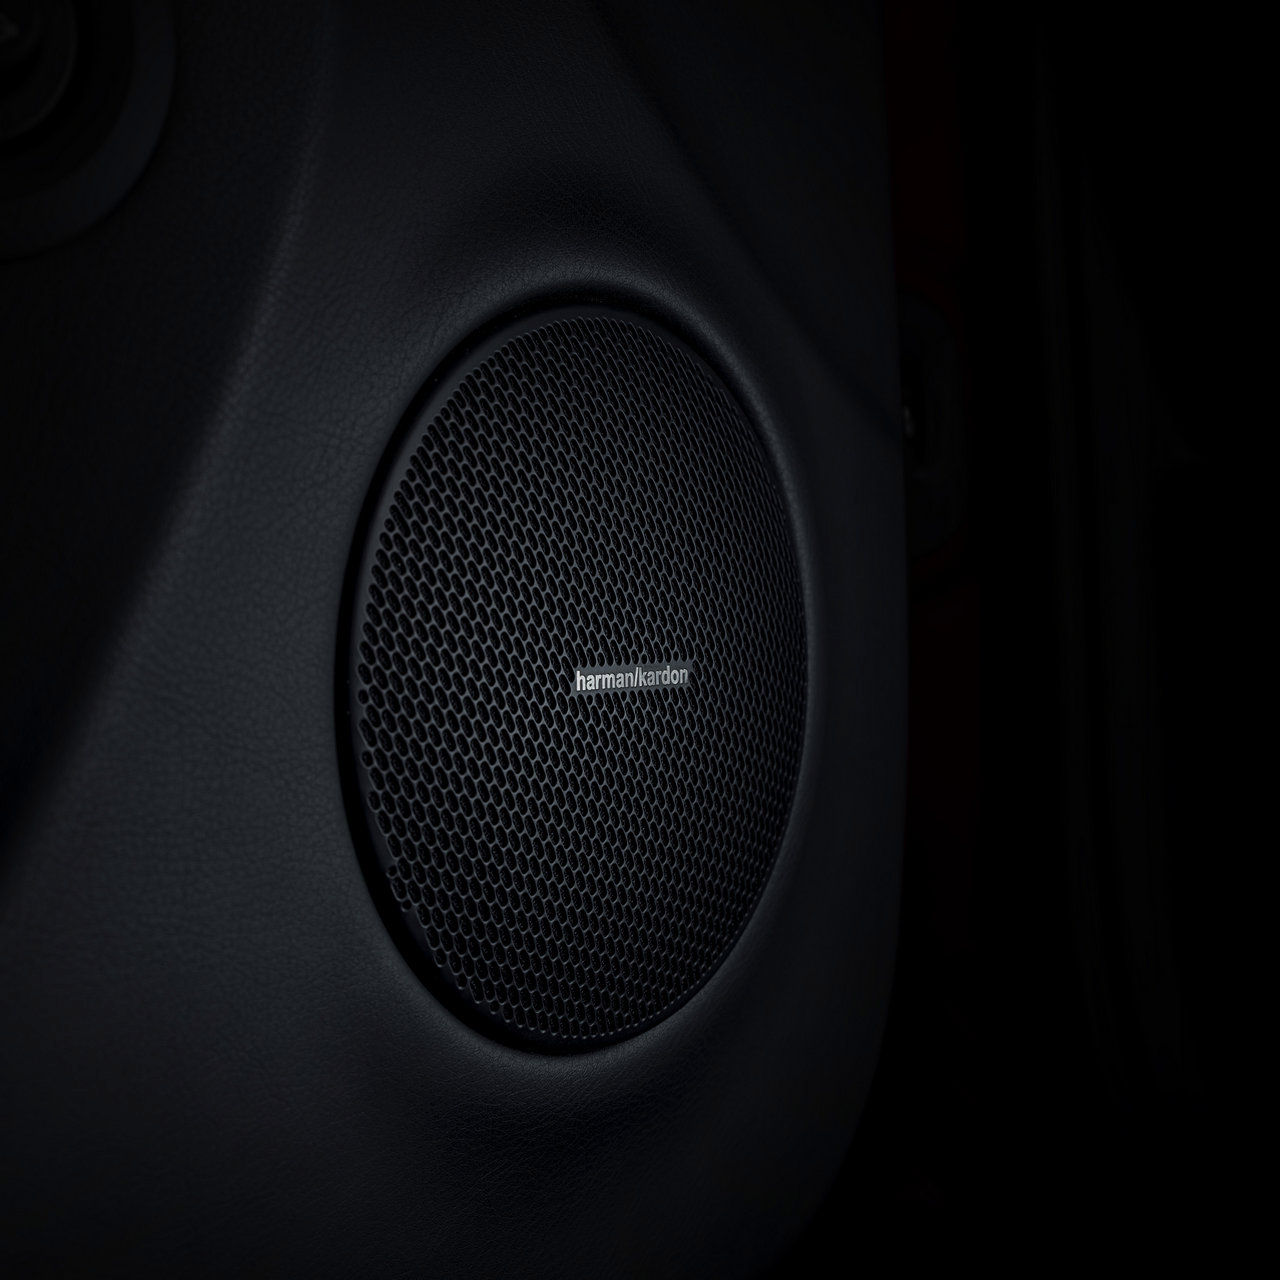 Maserati Auto Innenausstattung - Lautsprecher - Harman Kardon Premium-Audiosystem